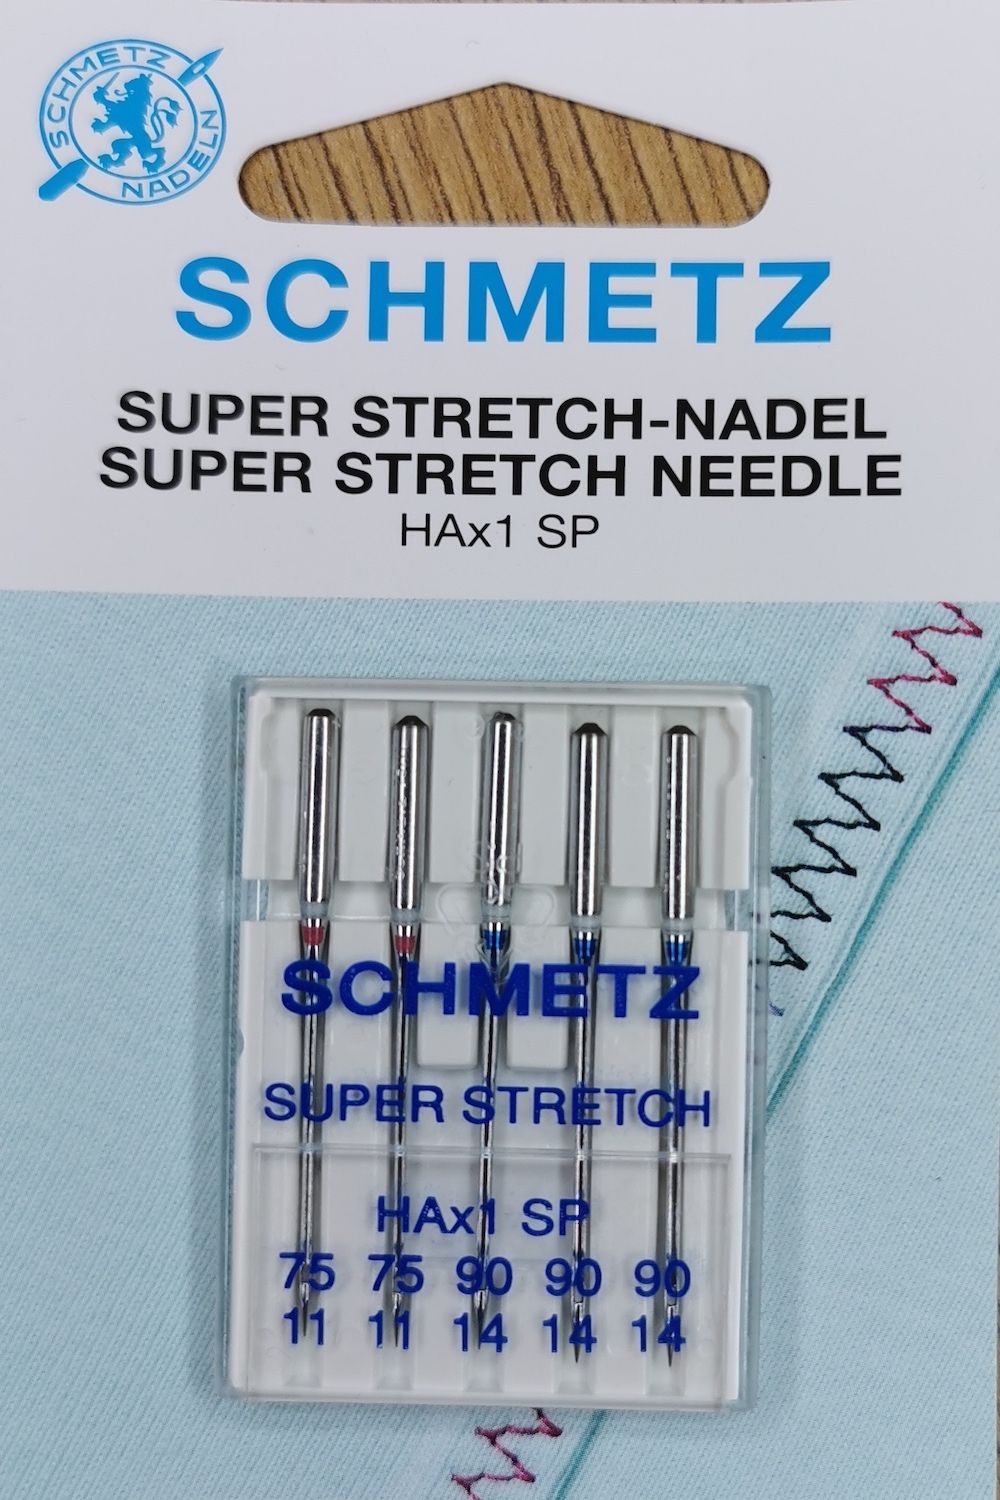 Schmetz Super stretch-needle HAx1 SP 75-90 5-pack 2x75, 3x90